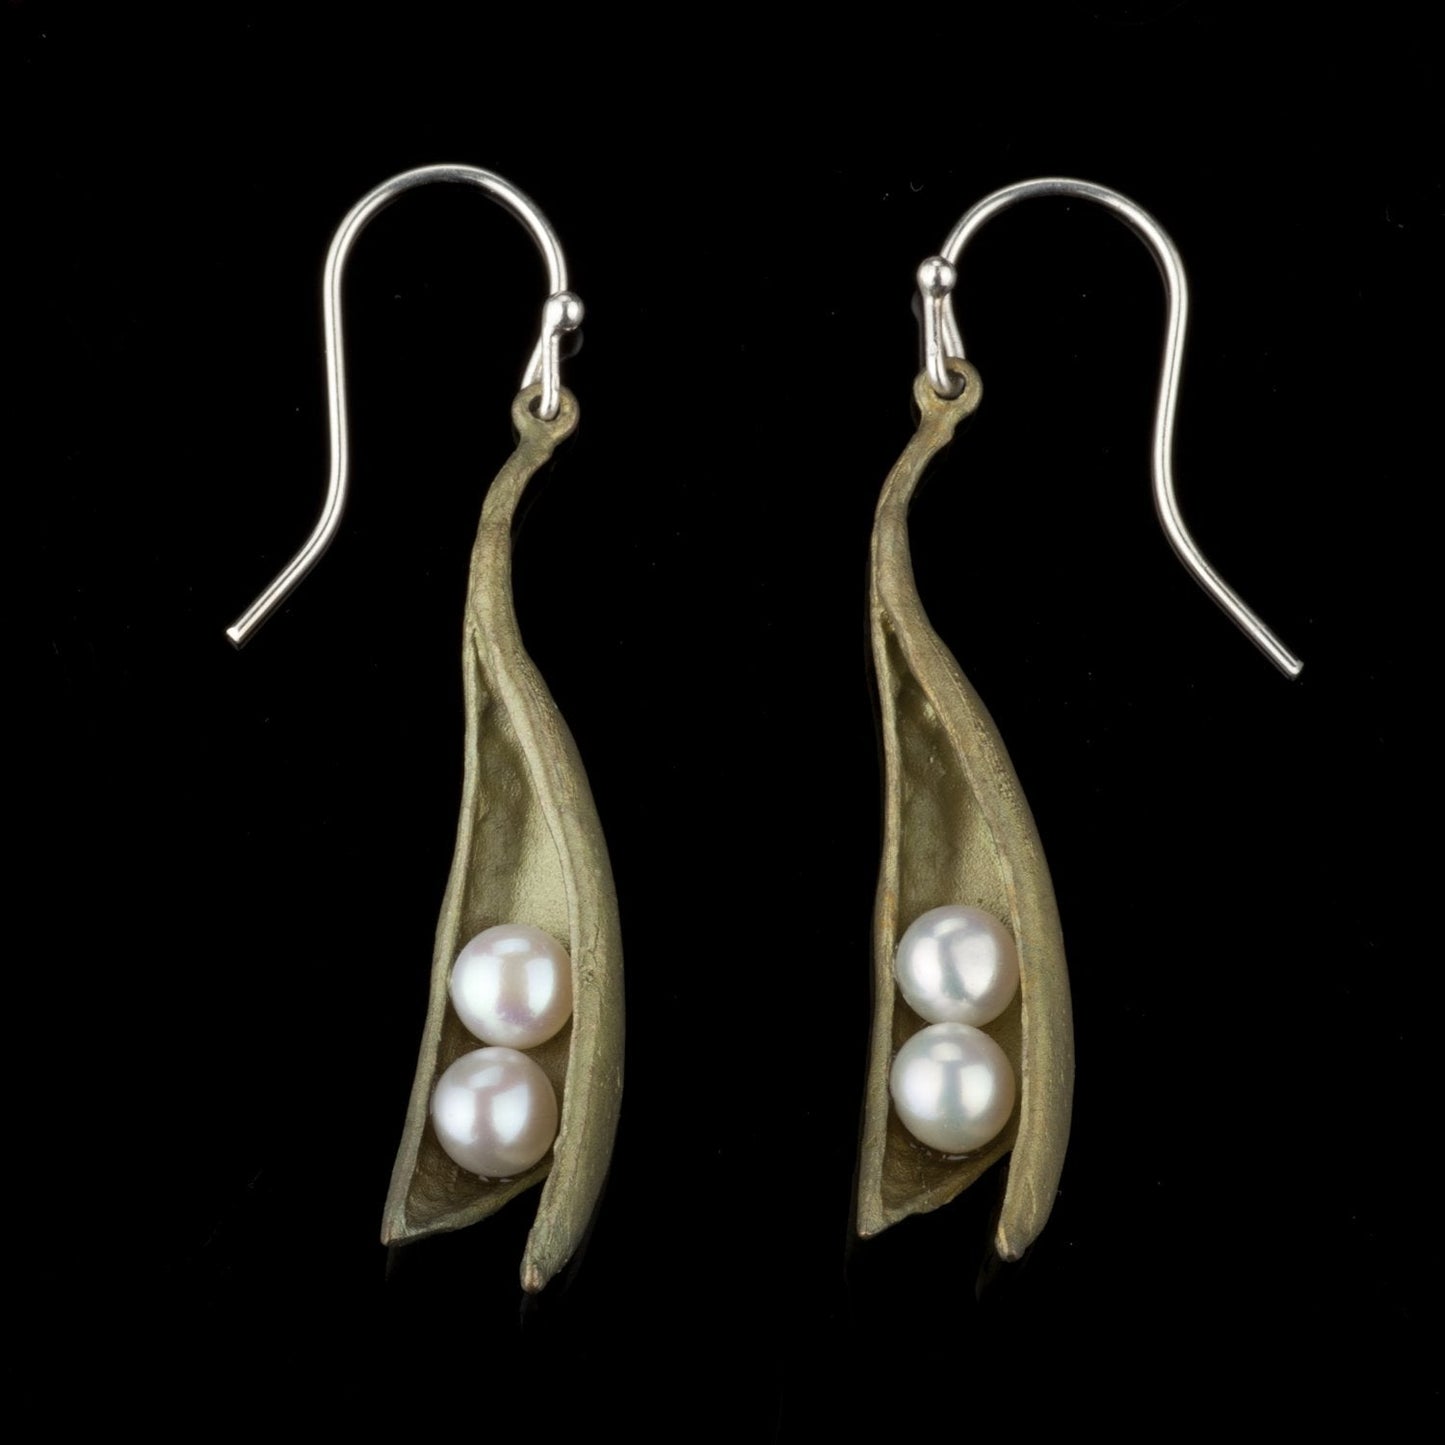 Two Pearls Peas in a Pod Earrings